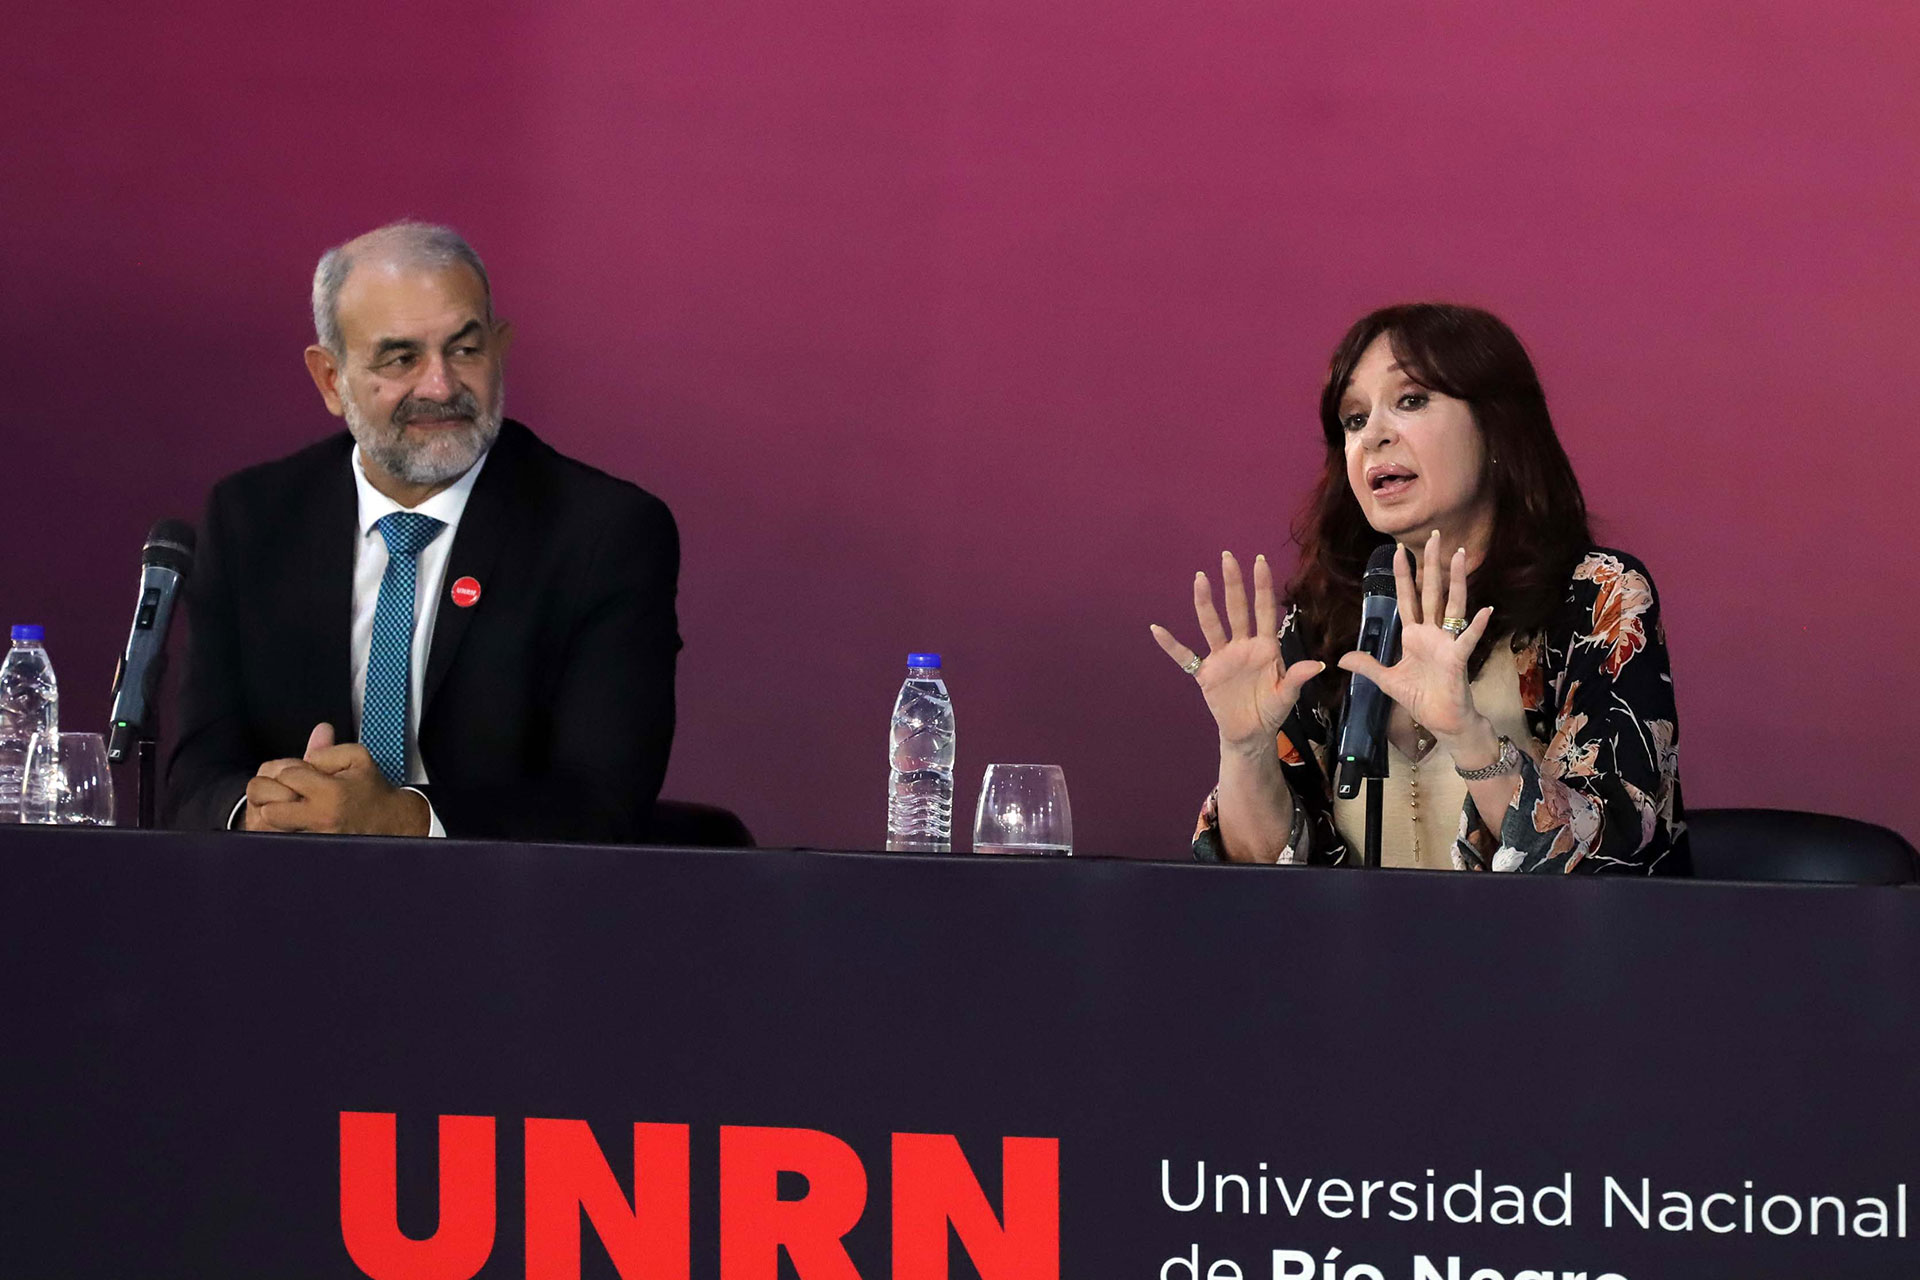 El análisis económico de Cristina Fernández de Kirchner explica la decadencia del país